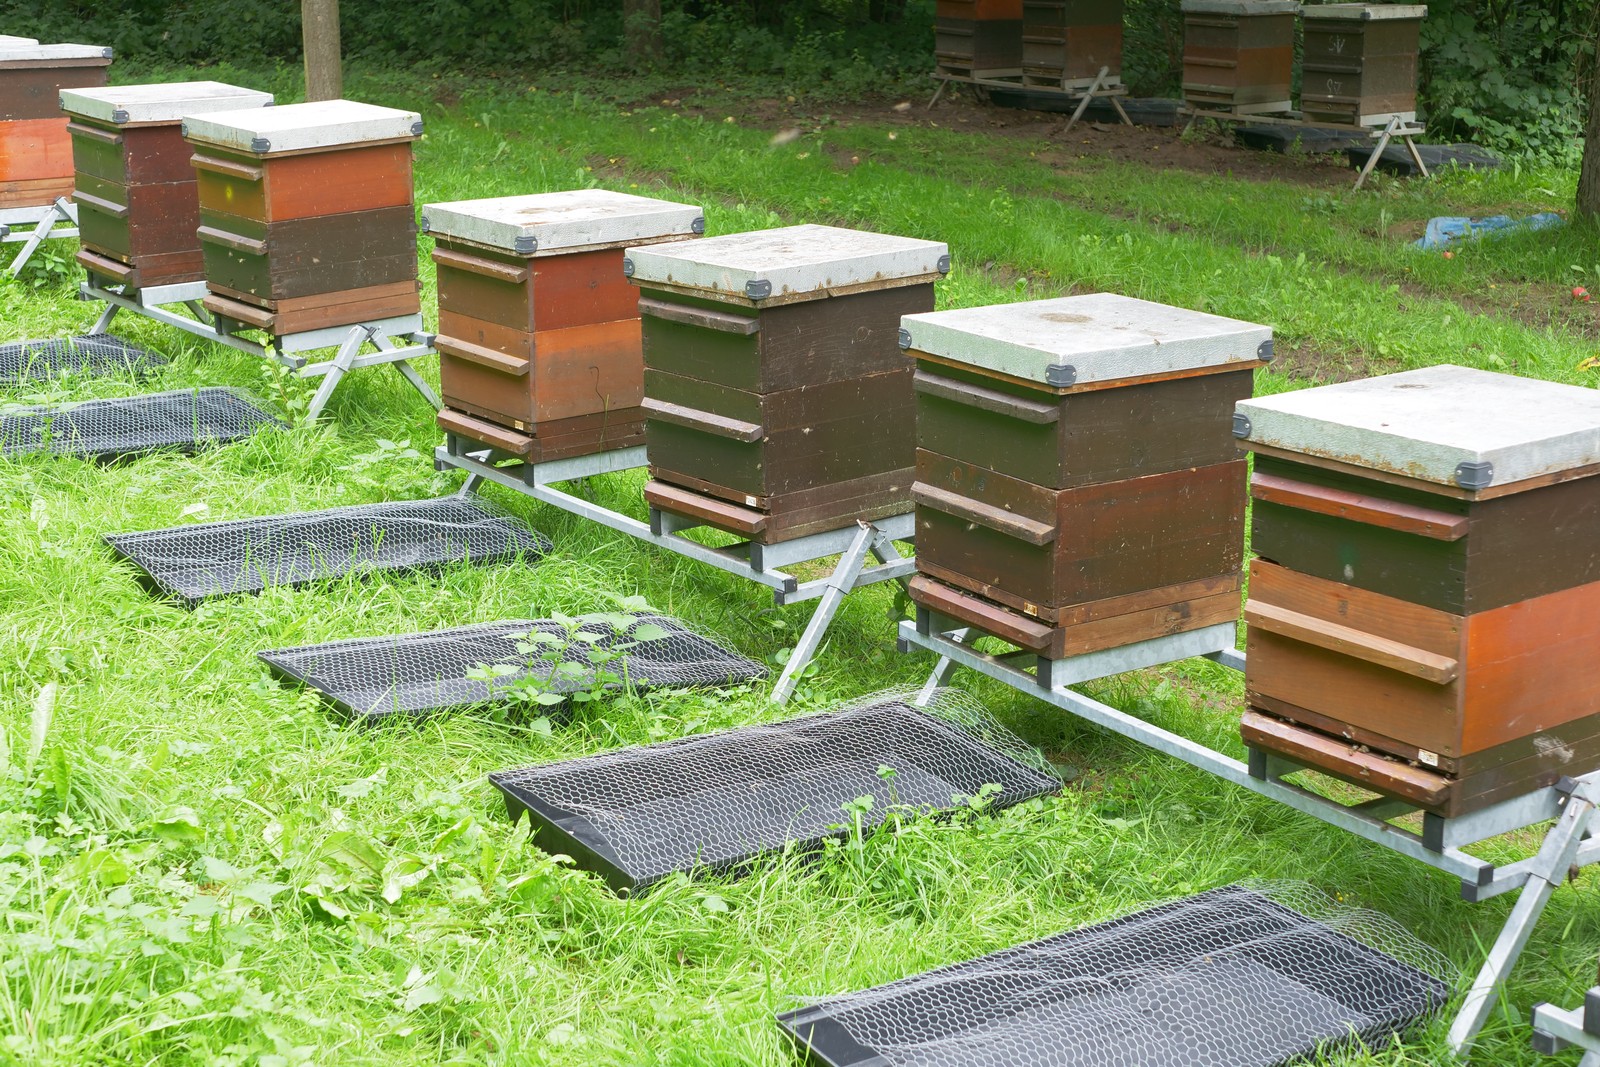 Bienenfallschalen zur Kontrolle des Totenfalls am Flugloch, auf dem Boden und vor dem Bienenvolk.